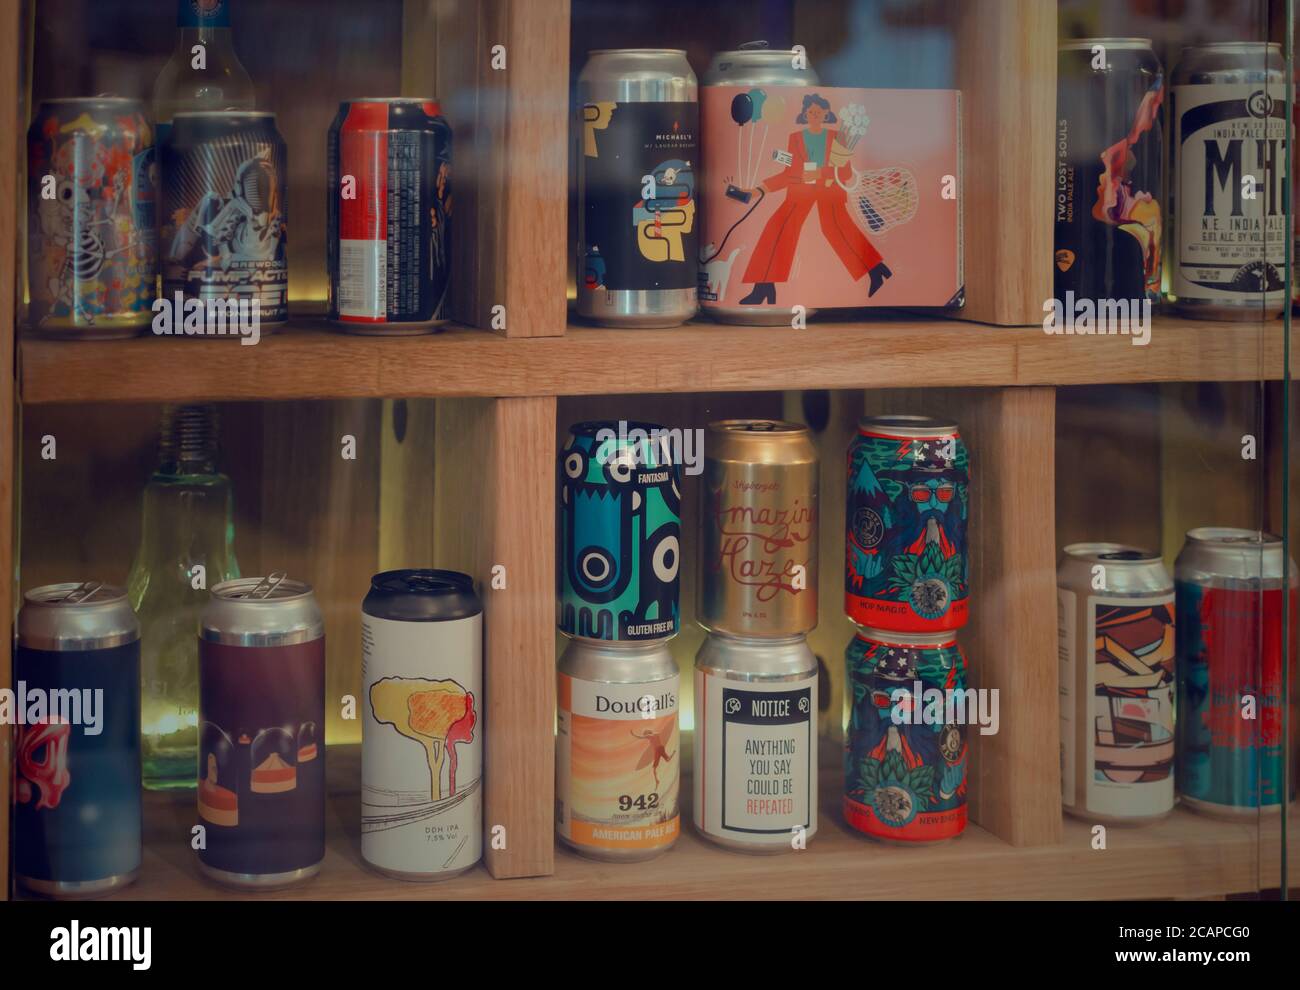 Boîtes de bières artisanales sur une étagère. Hops&Dreams, Séville, Espagne Banque D'Images